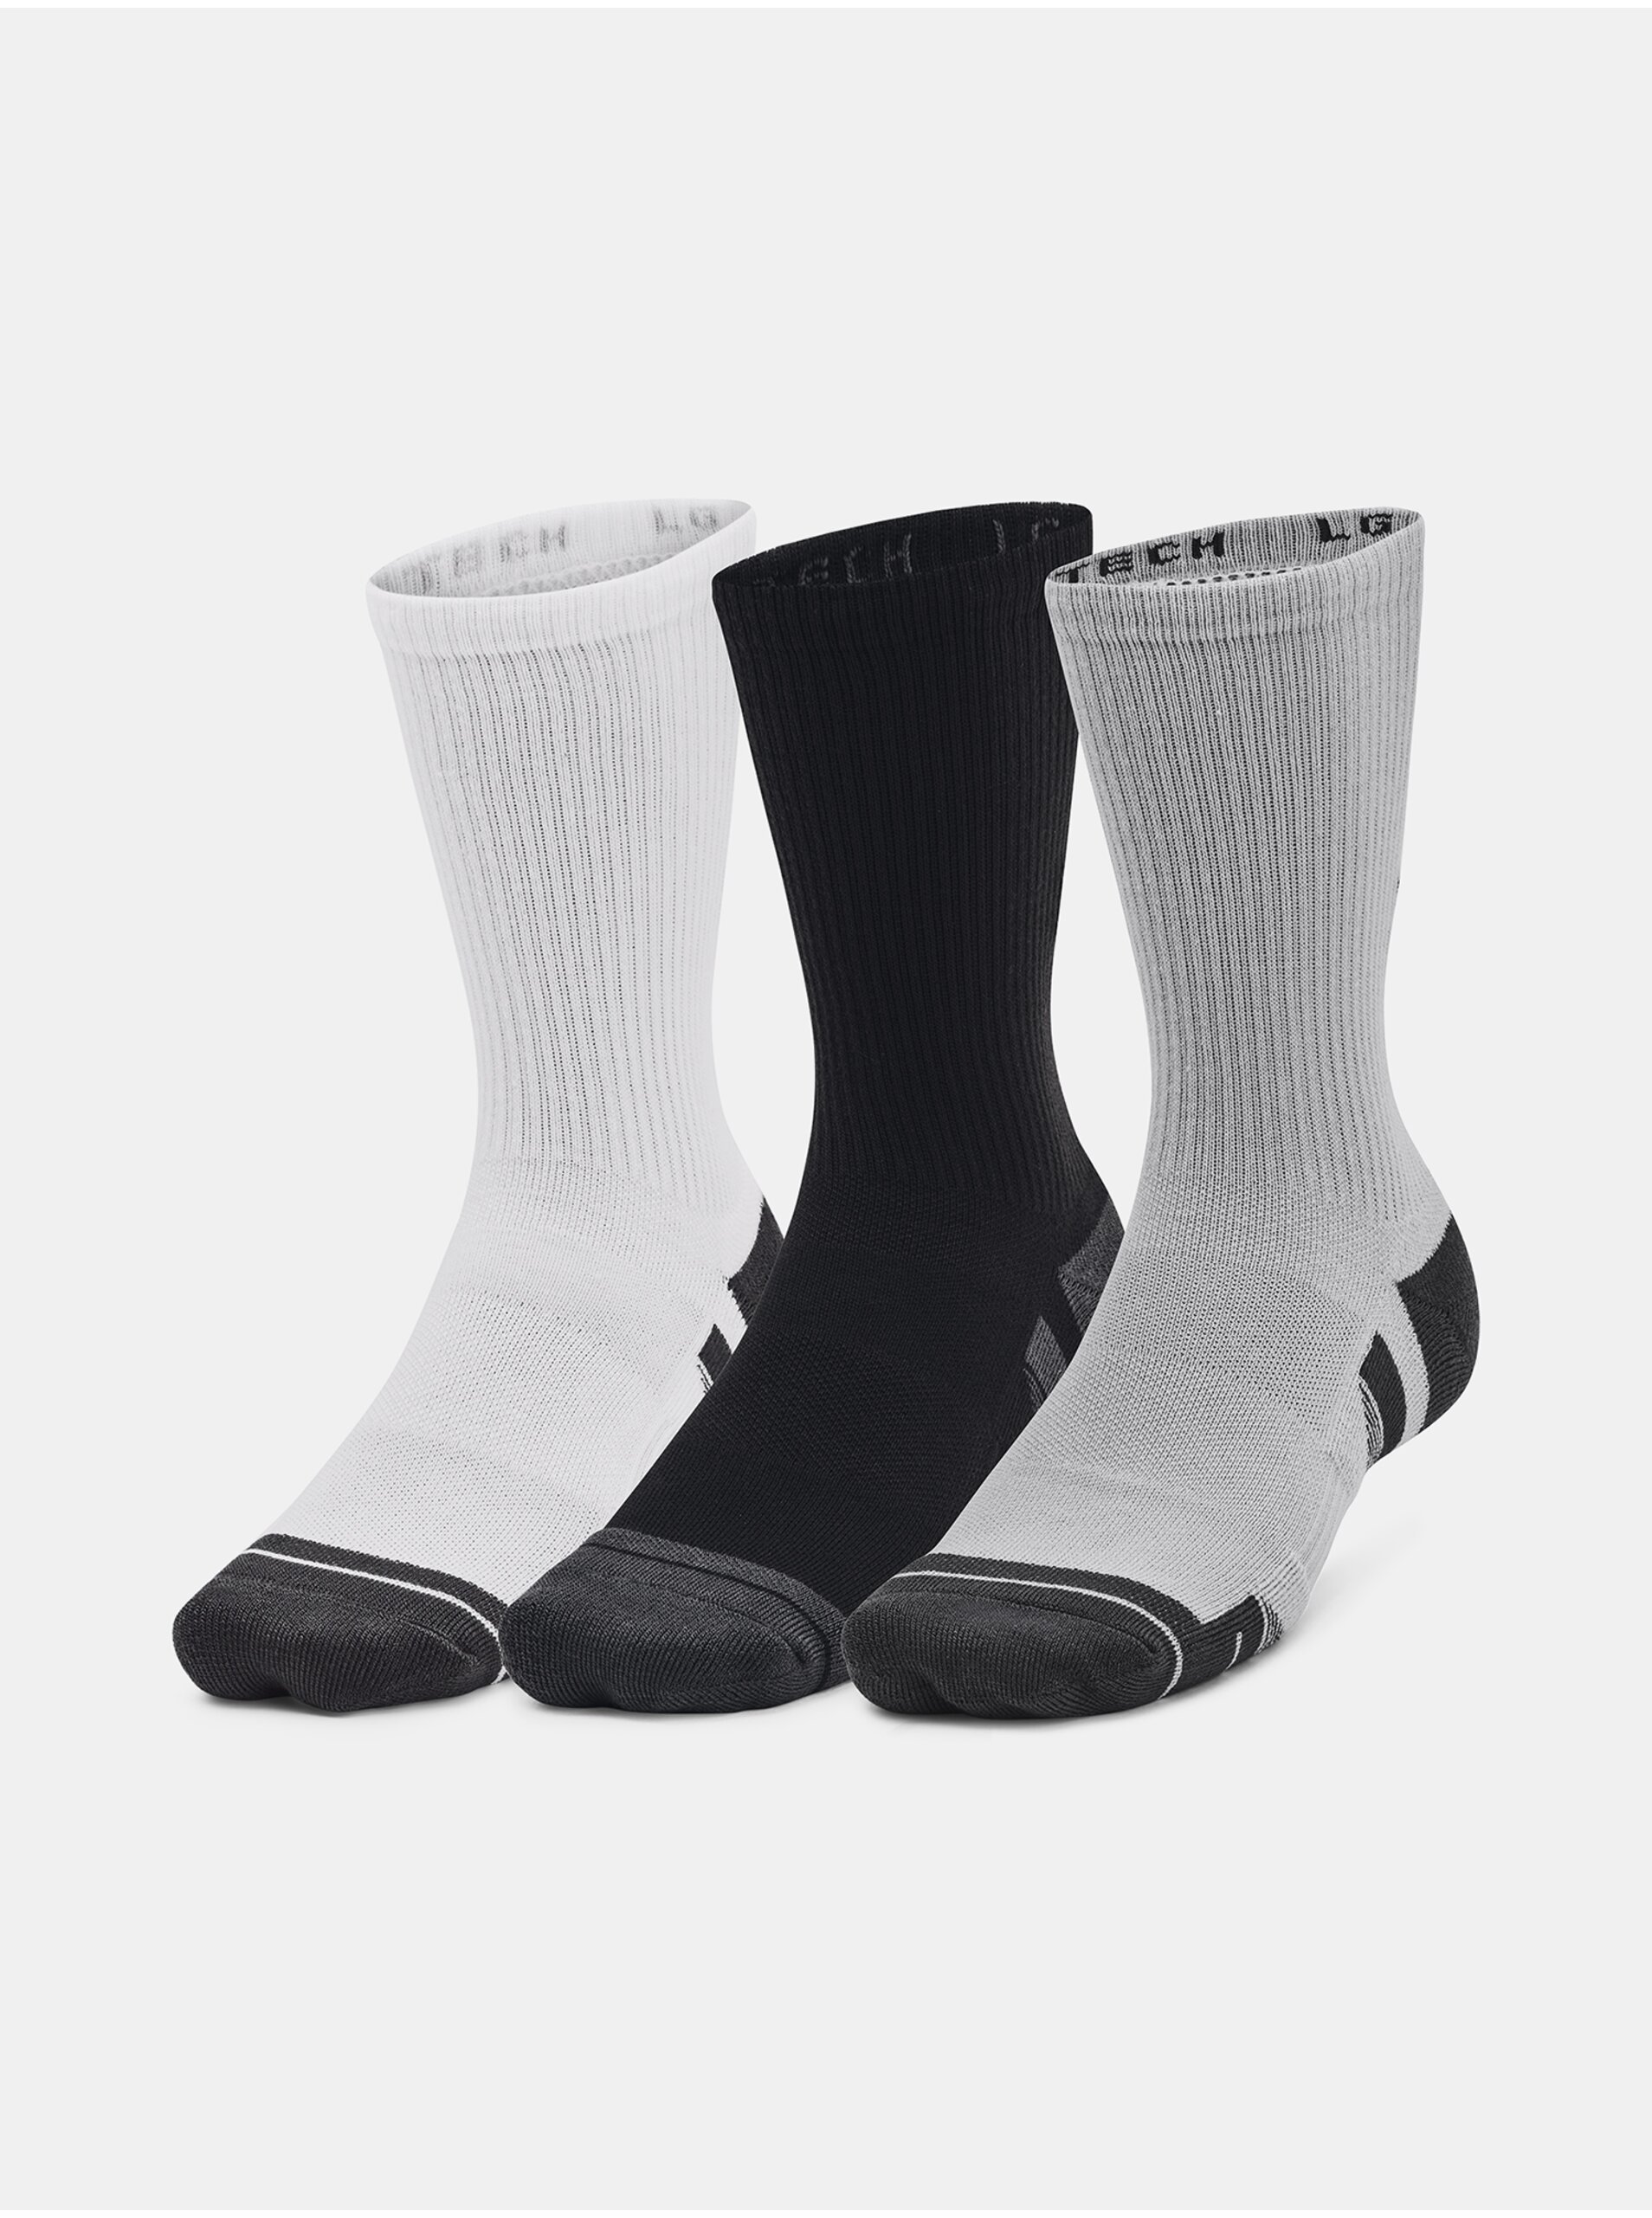 Lacno Súprava troch párov pánskych ponožiek v šedej, bielej a čiernej farbe Under Armour Performance